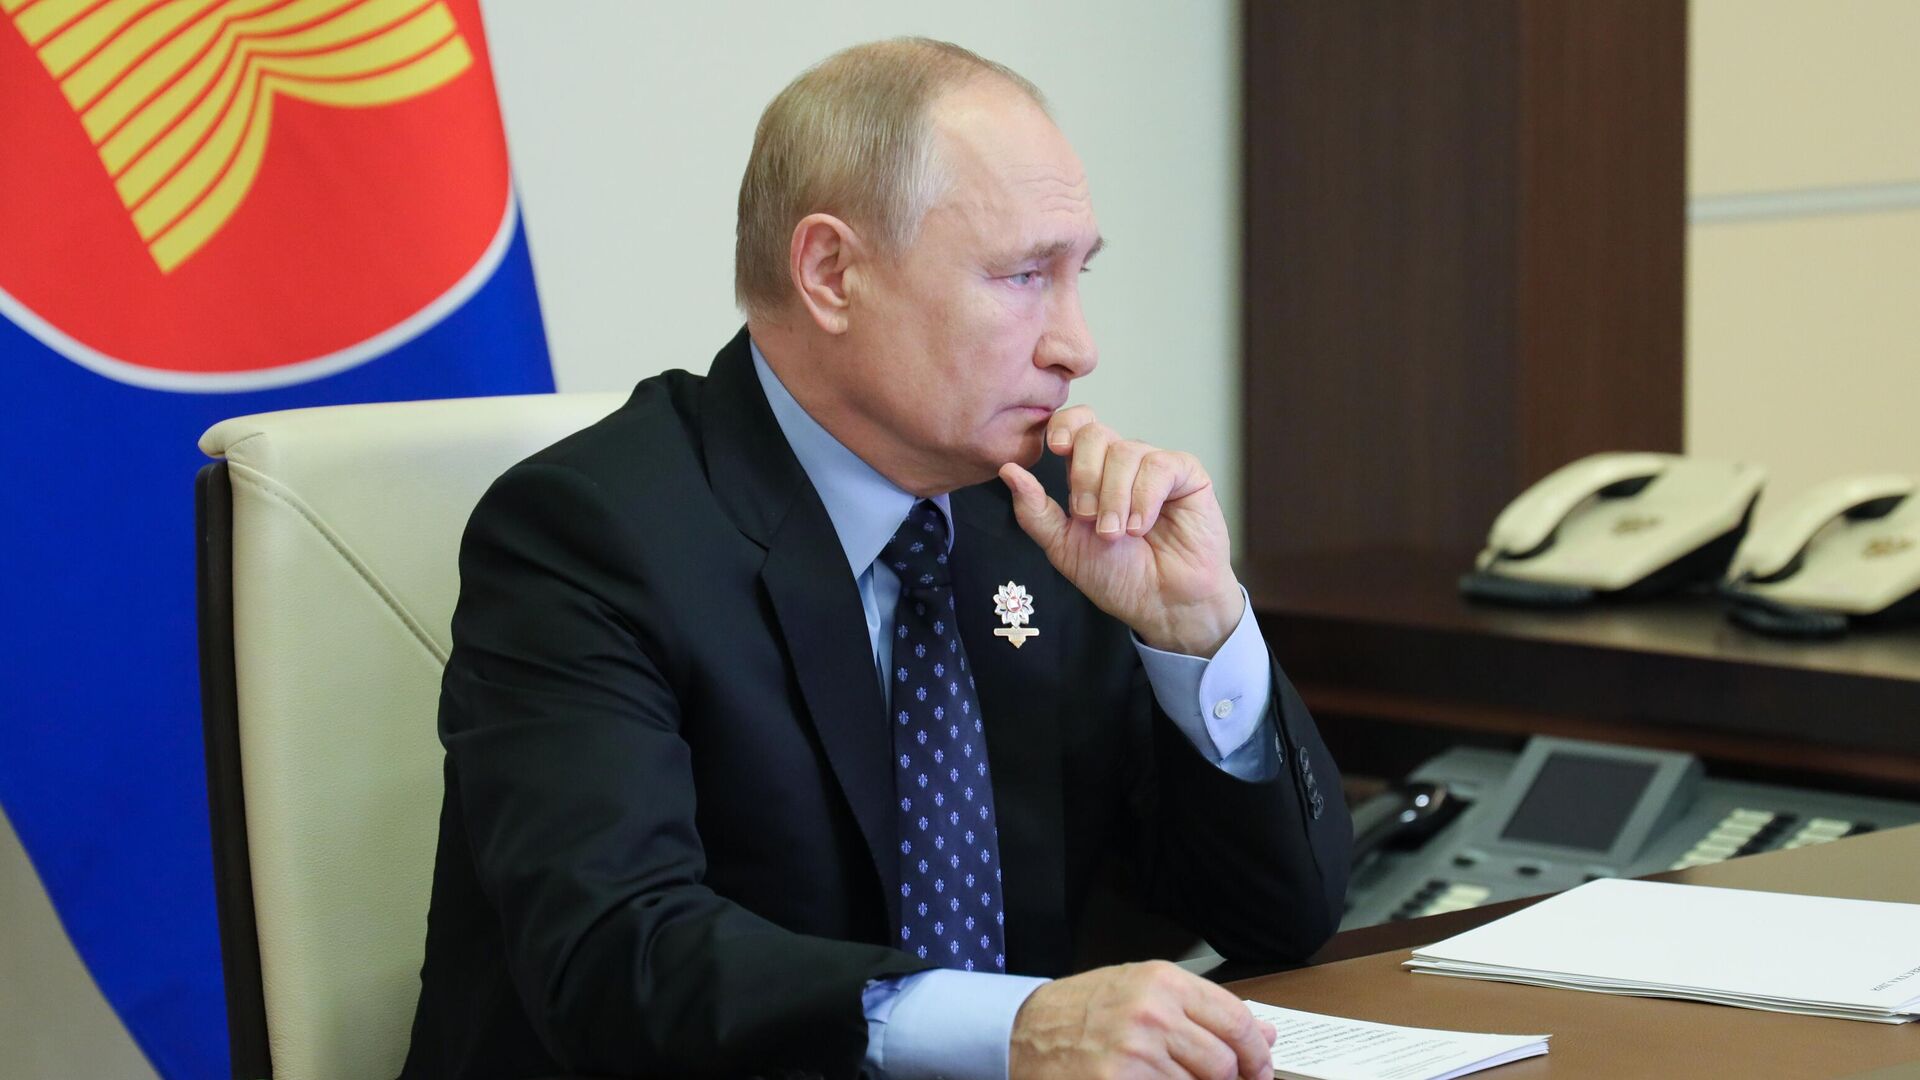 Russia Putin East Asia Summit - Sputnik International, 1920, 28.01.2022